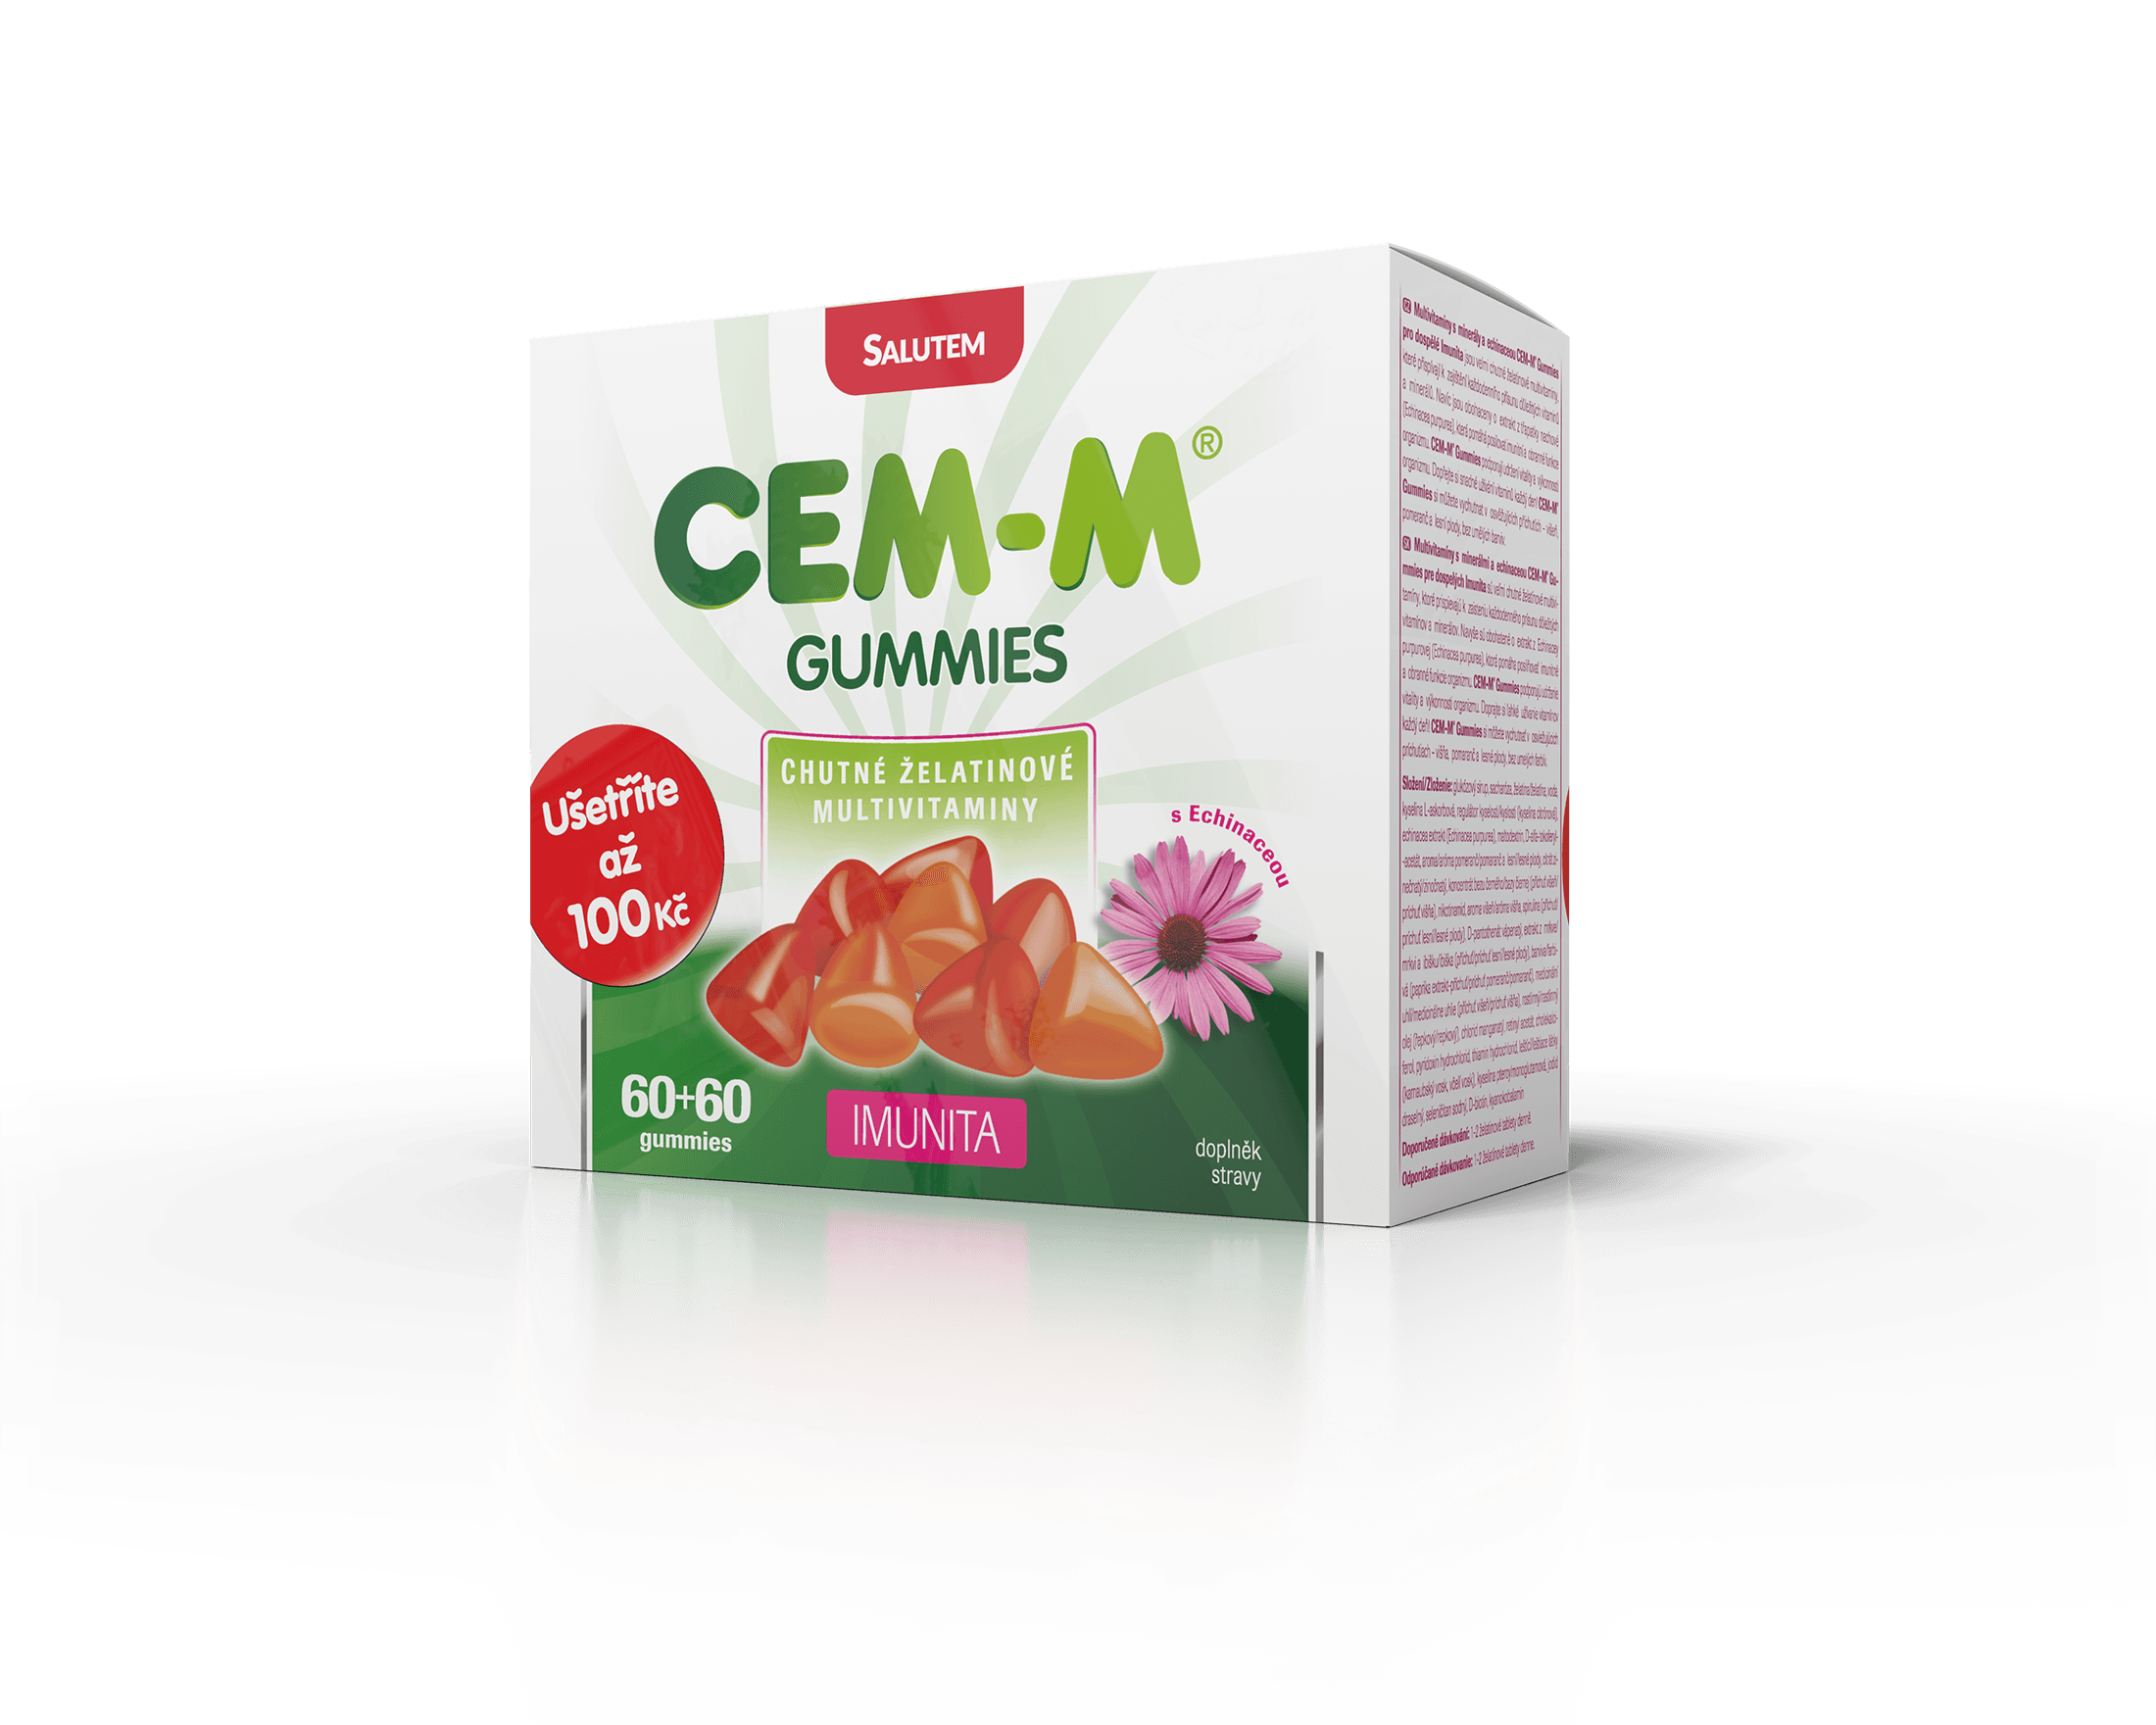 vizu box promopack Cem-M Gummies Imunita CZE P2 WEB Akce: CEM-M gummies pro dospělé Imunita 60+60 navíc